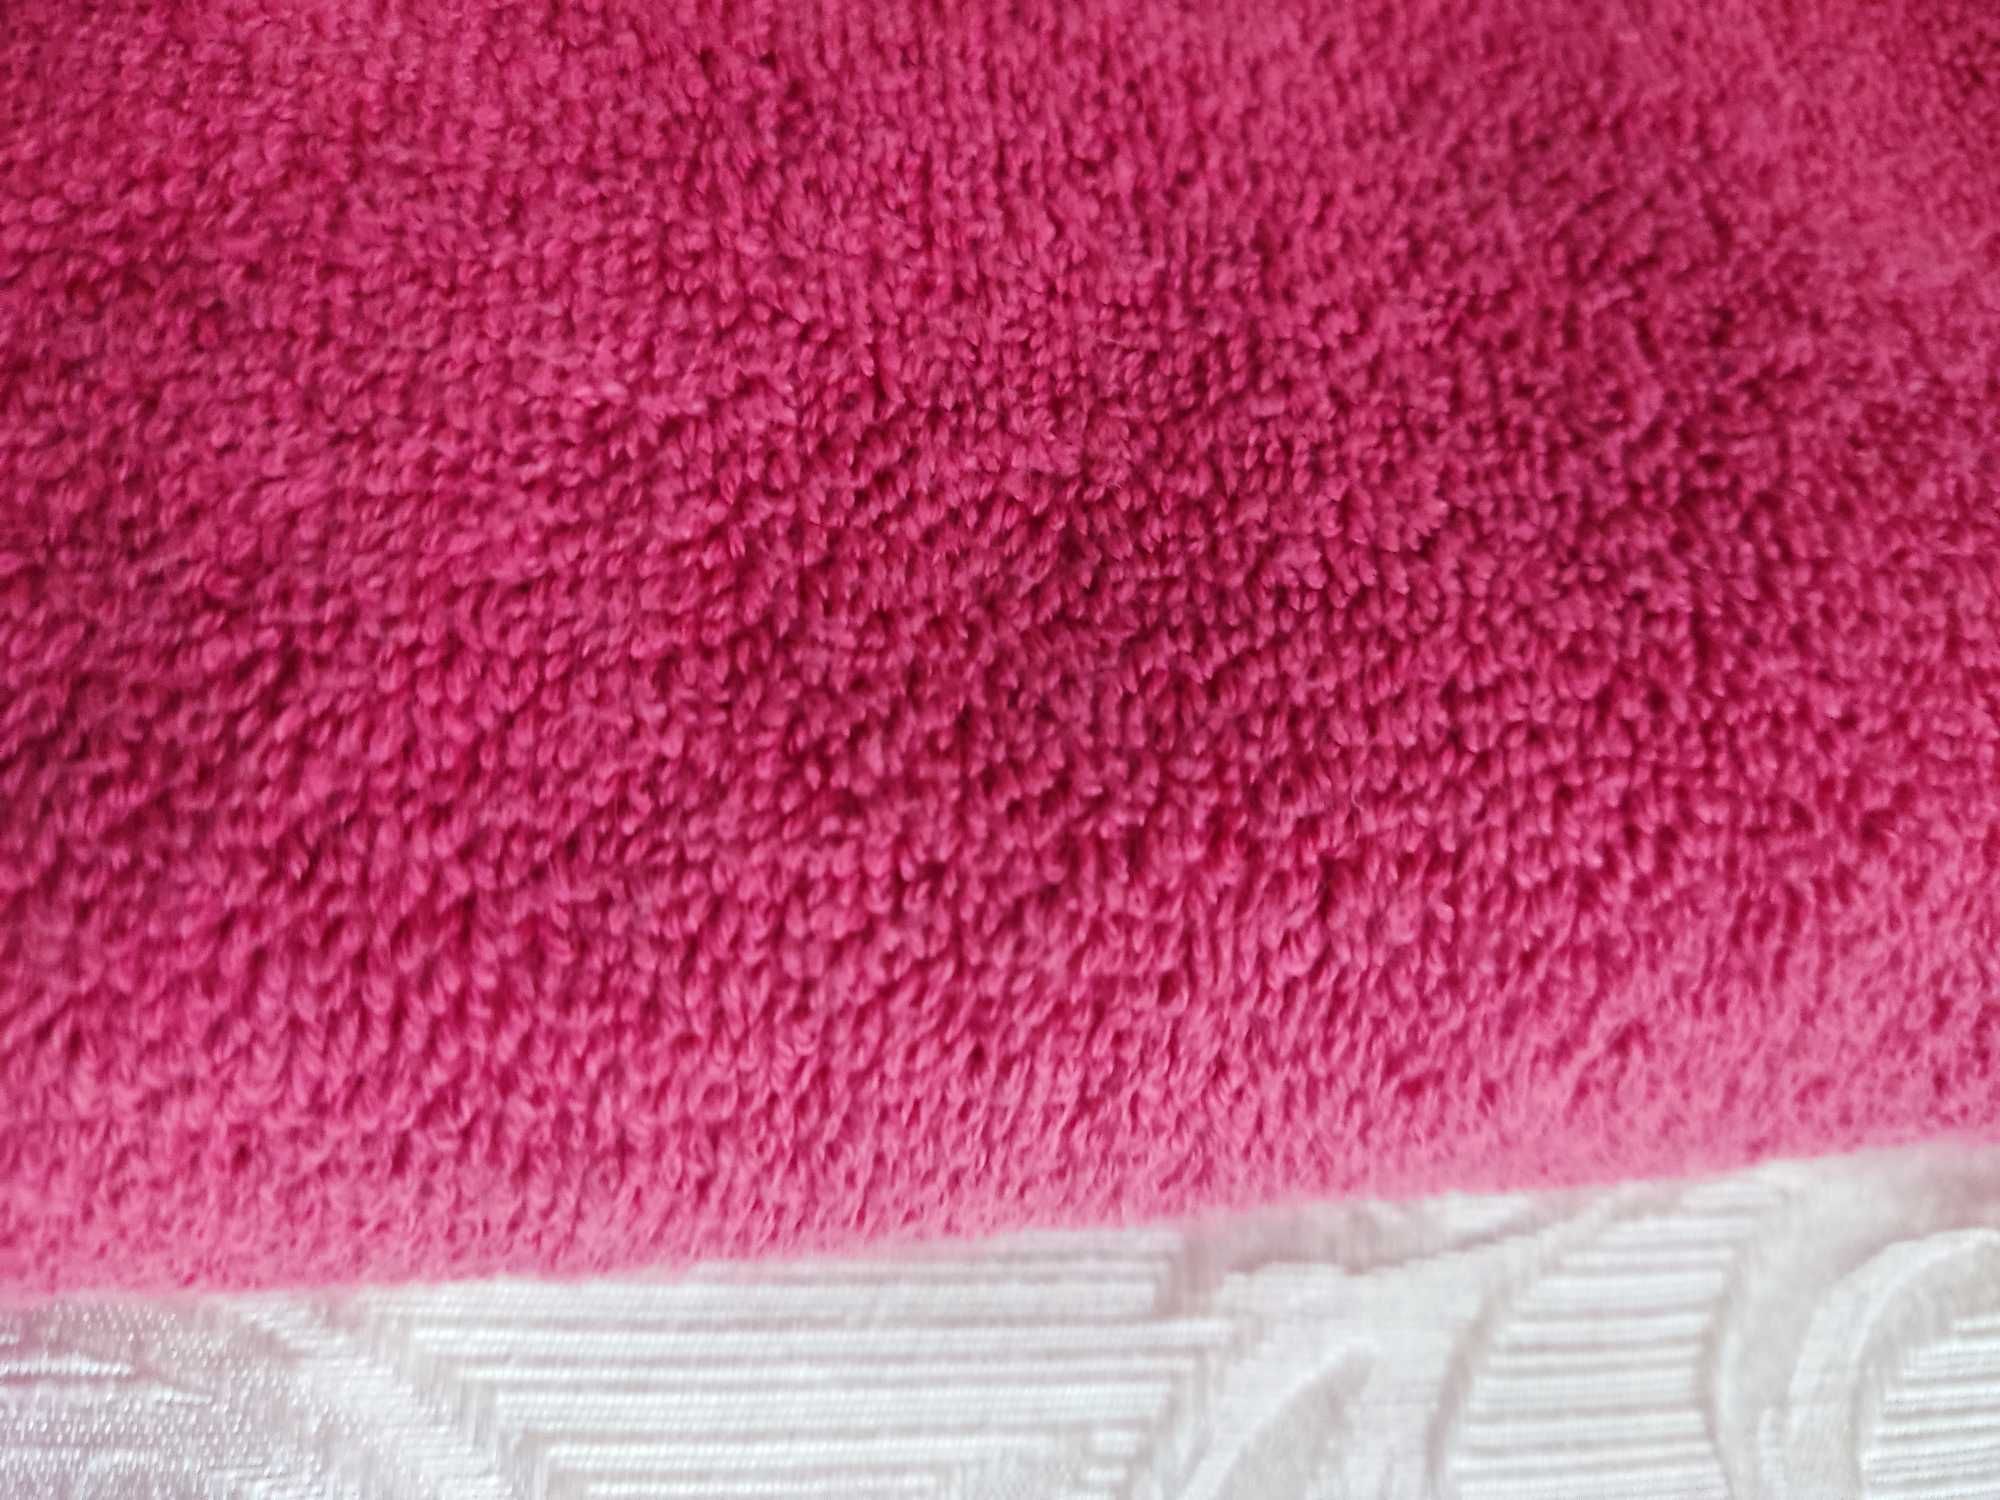 140х70 Полотенце 500мг, Турция,  махровое ТМ Pretty Коричневое Розовое